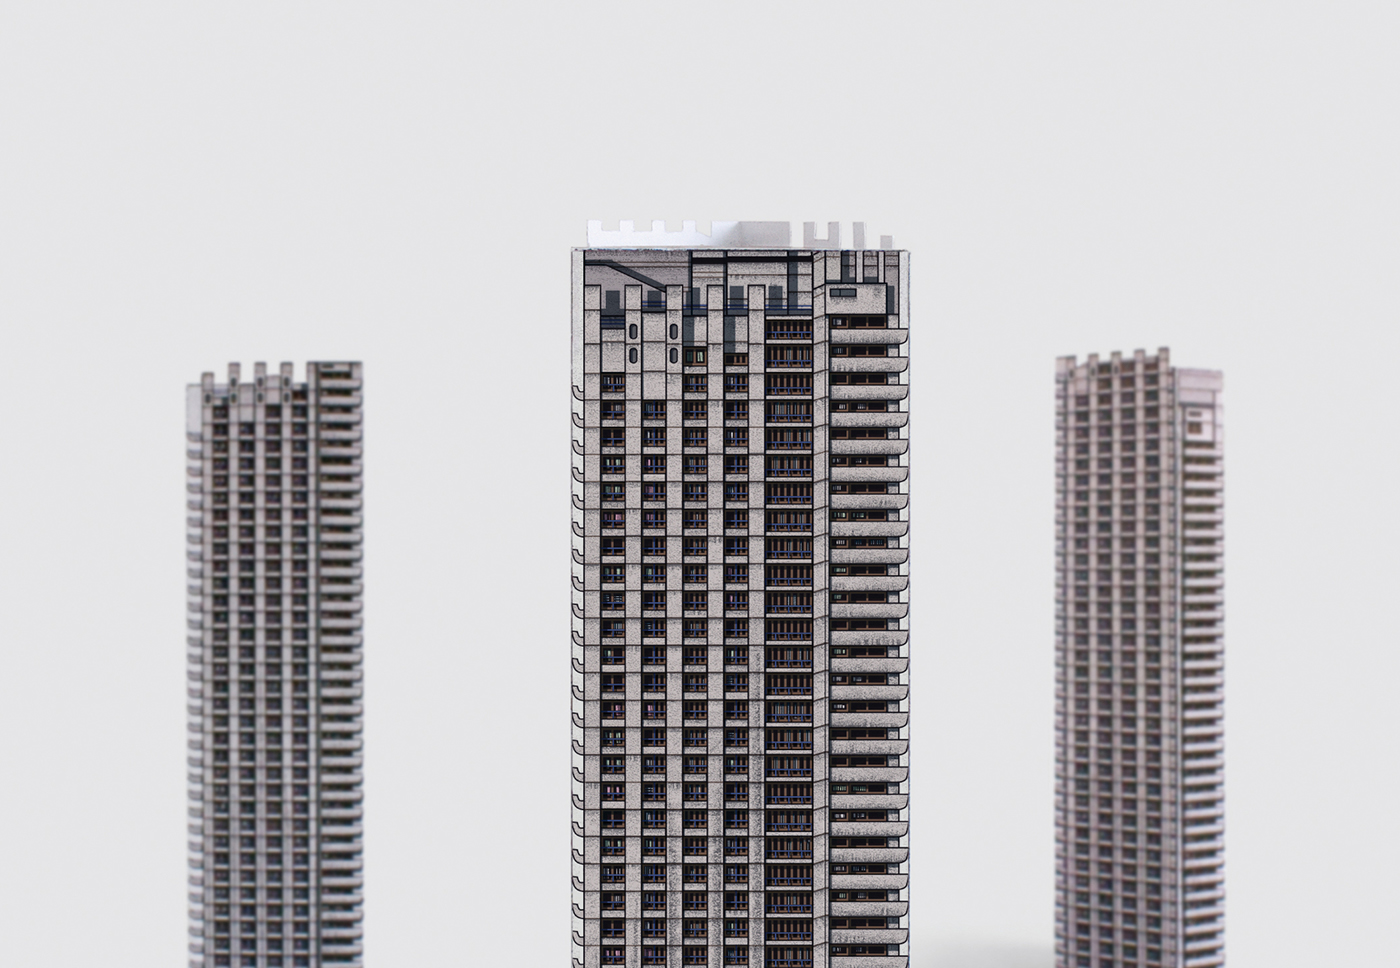 Brutalism London post-war architecture ILLUSTRATION  Social housing paper model modernism pop-up city